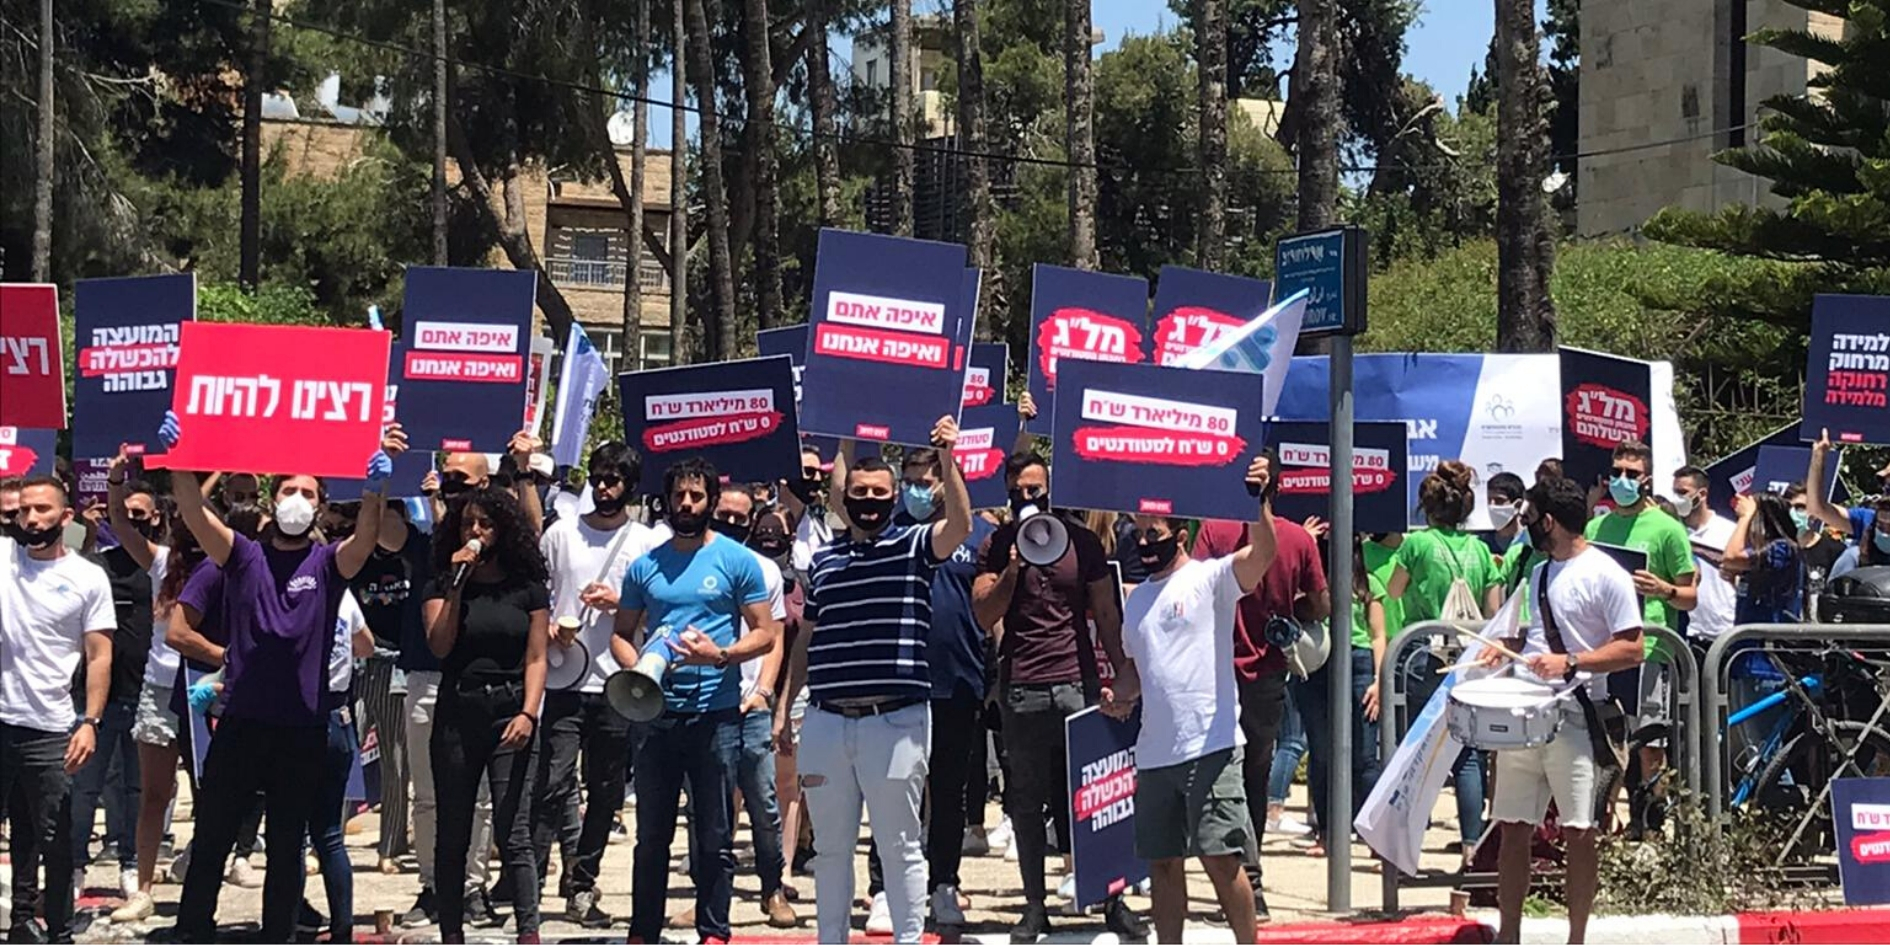 הפגנה של התאחדות הסטודנטים בירושלים, אתמול מול משרדי המל"ג | צילום: התאחדות הסטודנטים